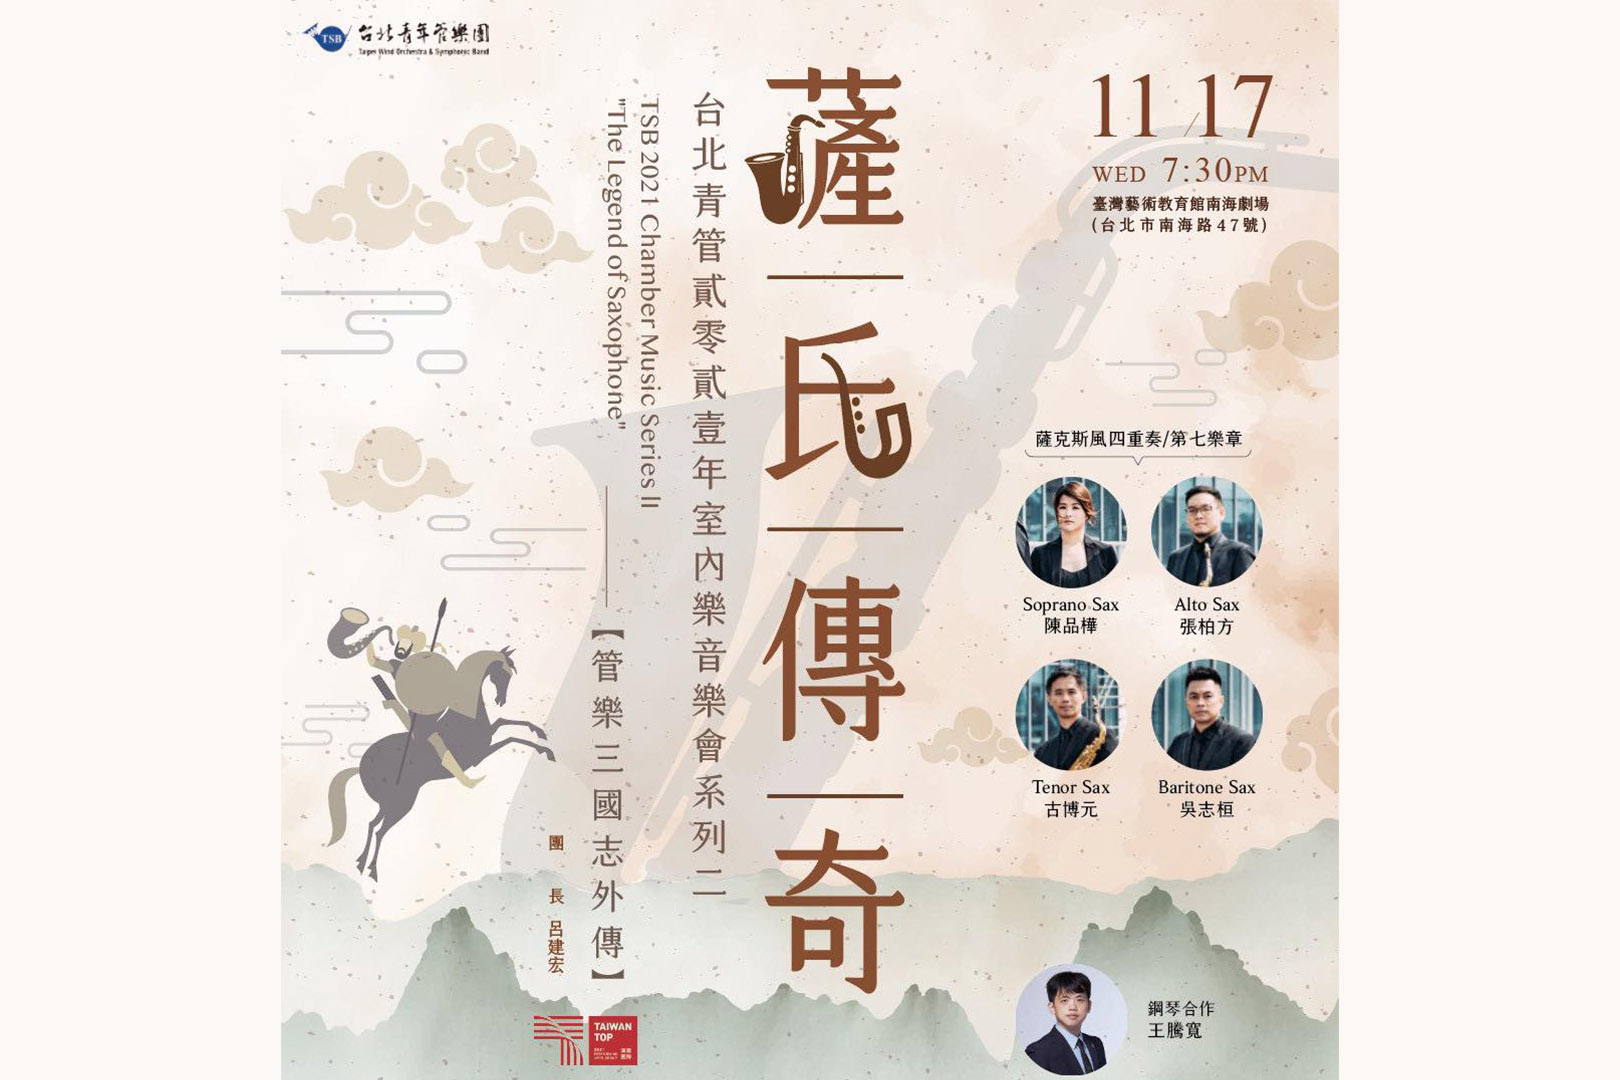 台北青年管樂團2021 年室內樂音樂會《管樂三國志外傳之薩氏傳奇》《好聲》